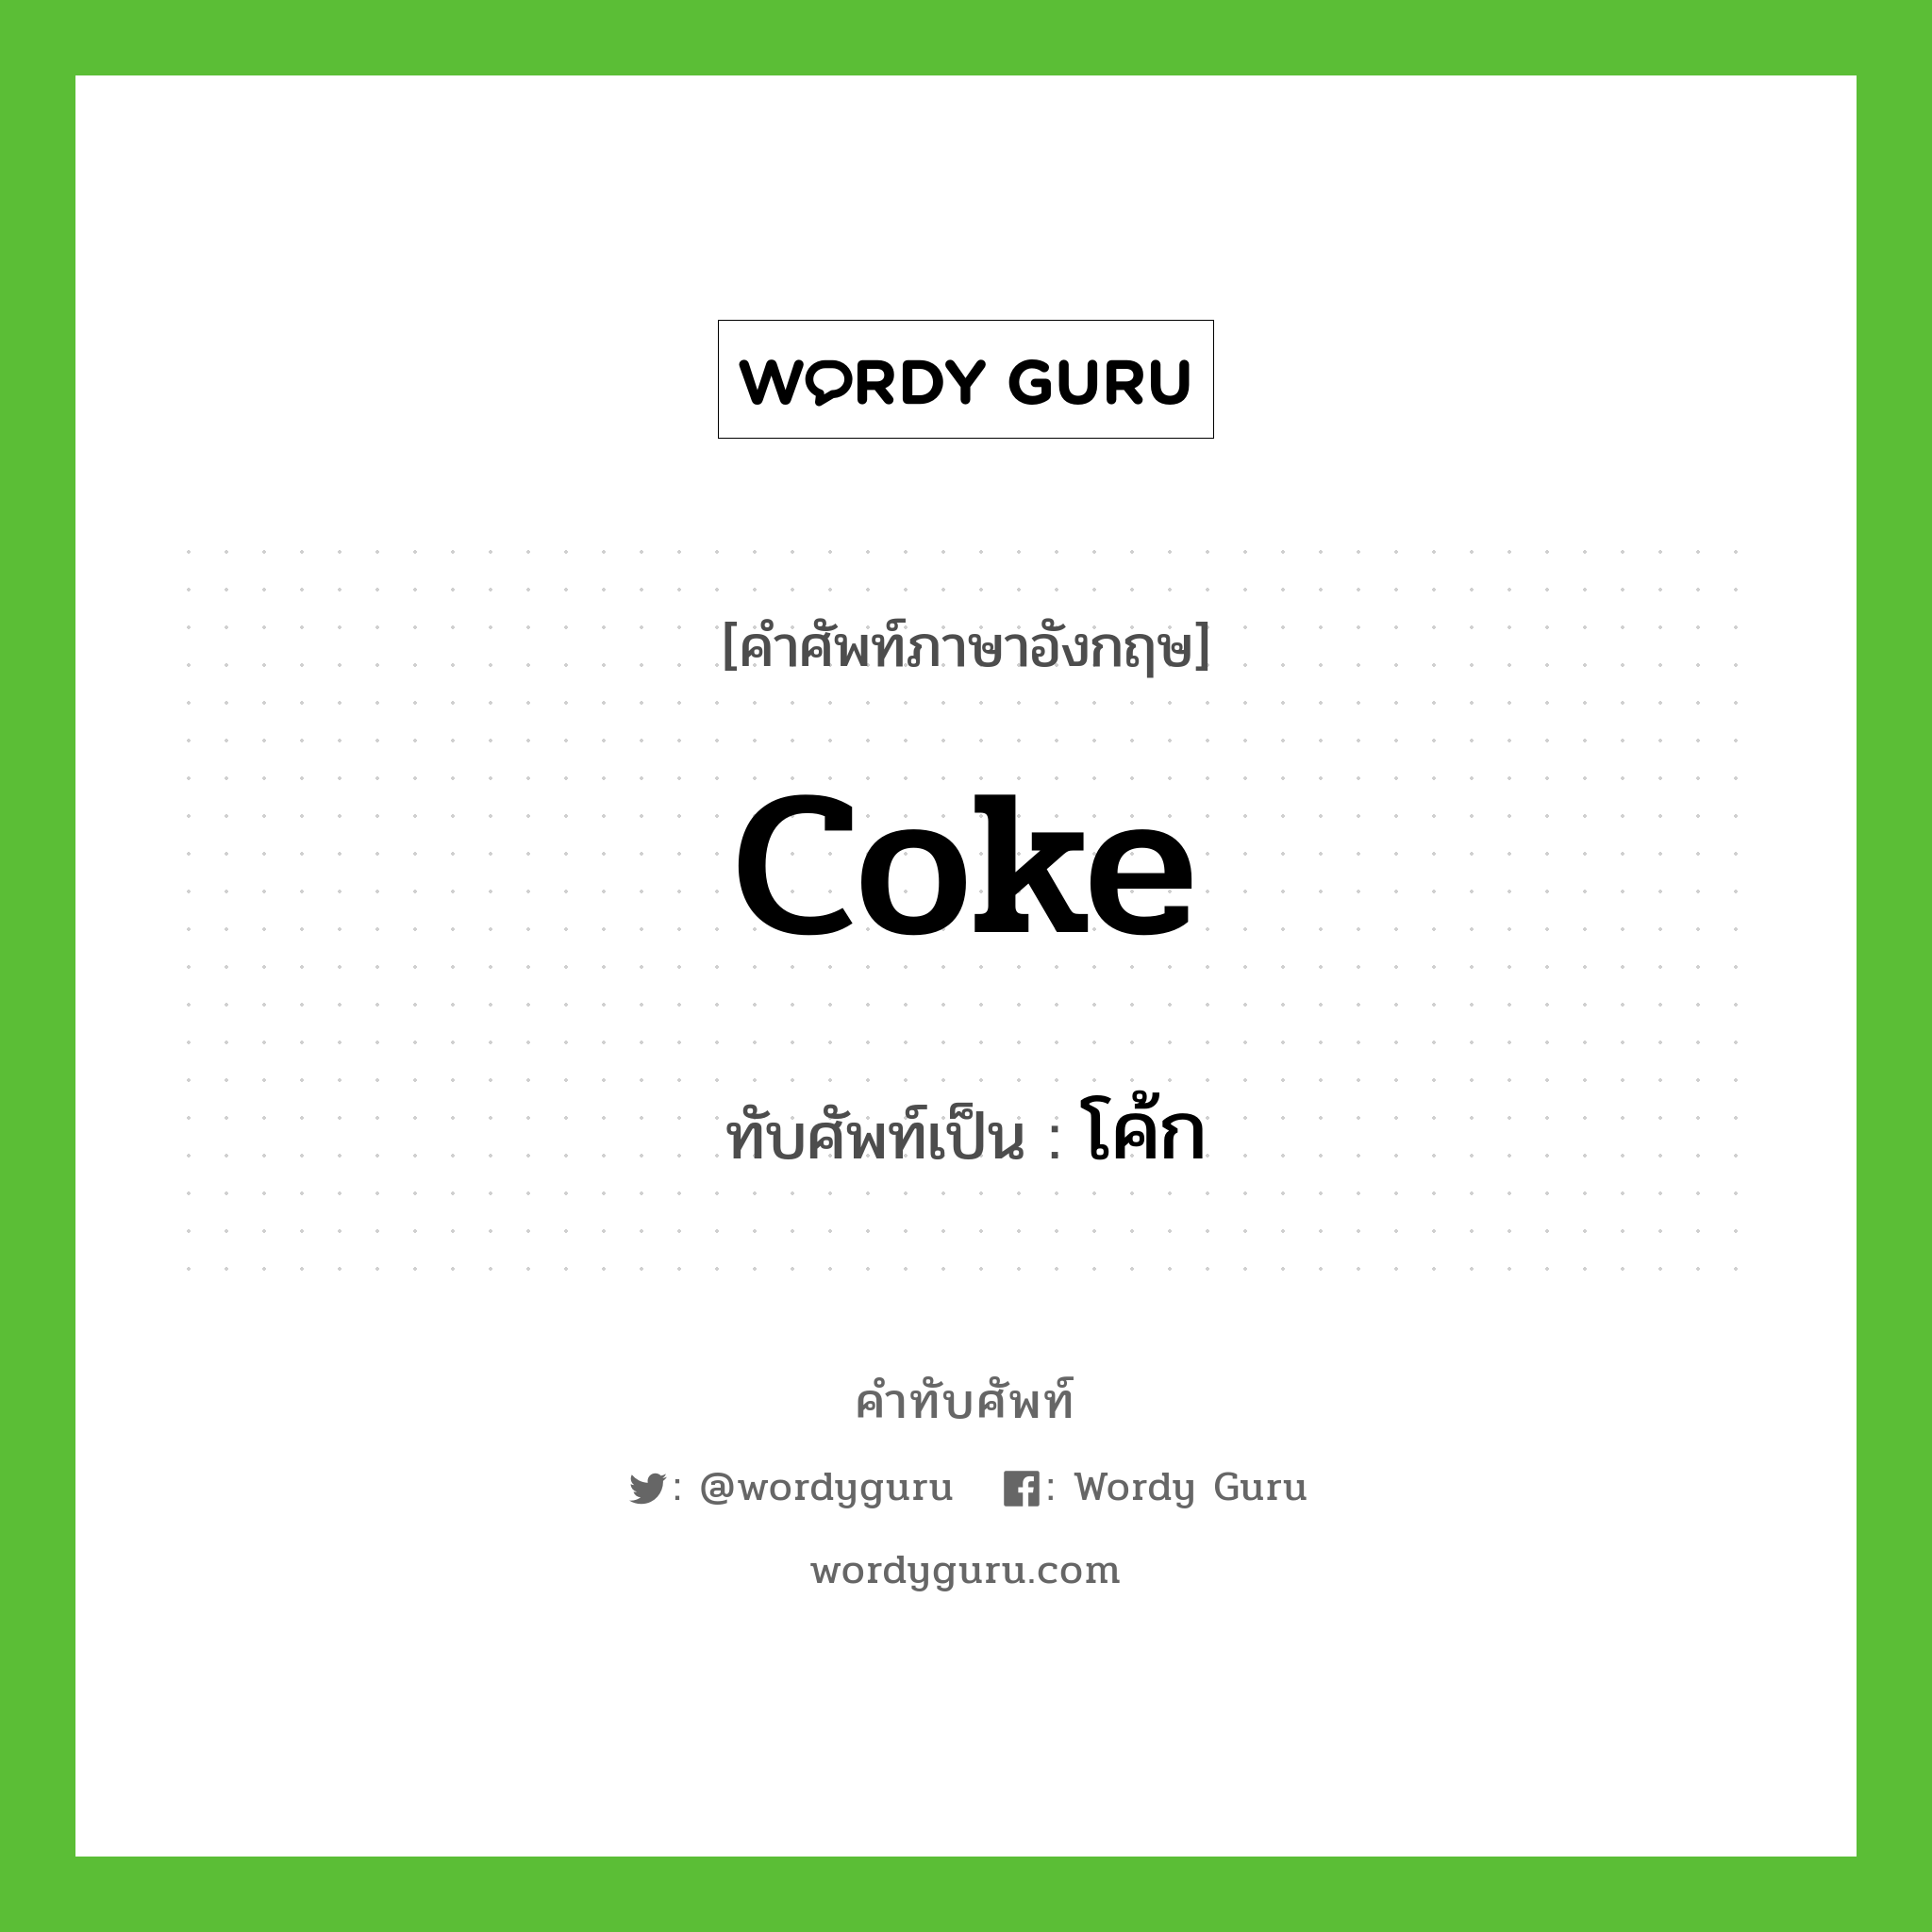 coke เขียนเป็นคำไทยว่าอะไร?, คำศัพท์ภาษาอังกฤษ coke ทับศัพท์เป็น โค้ก